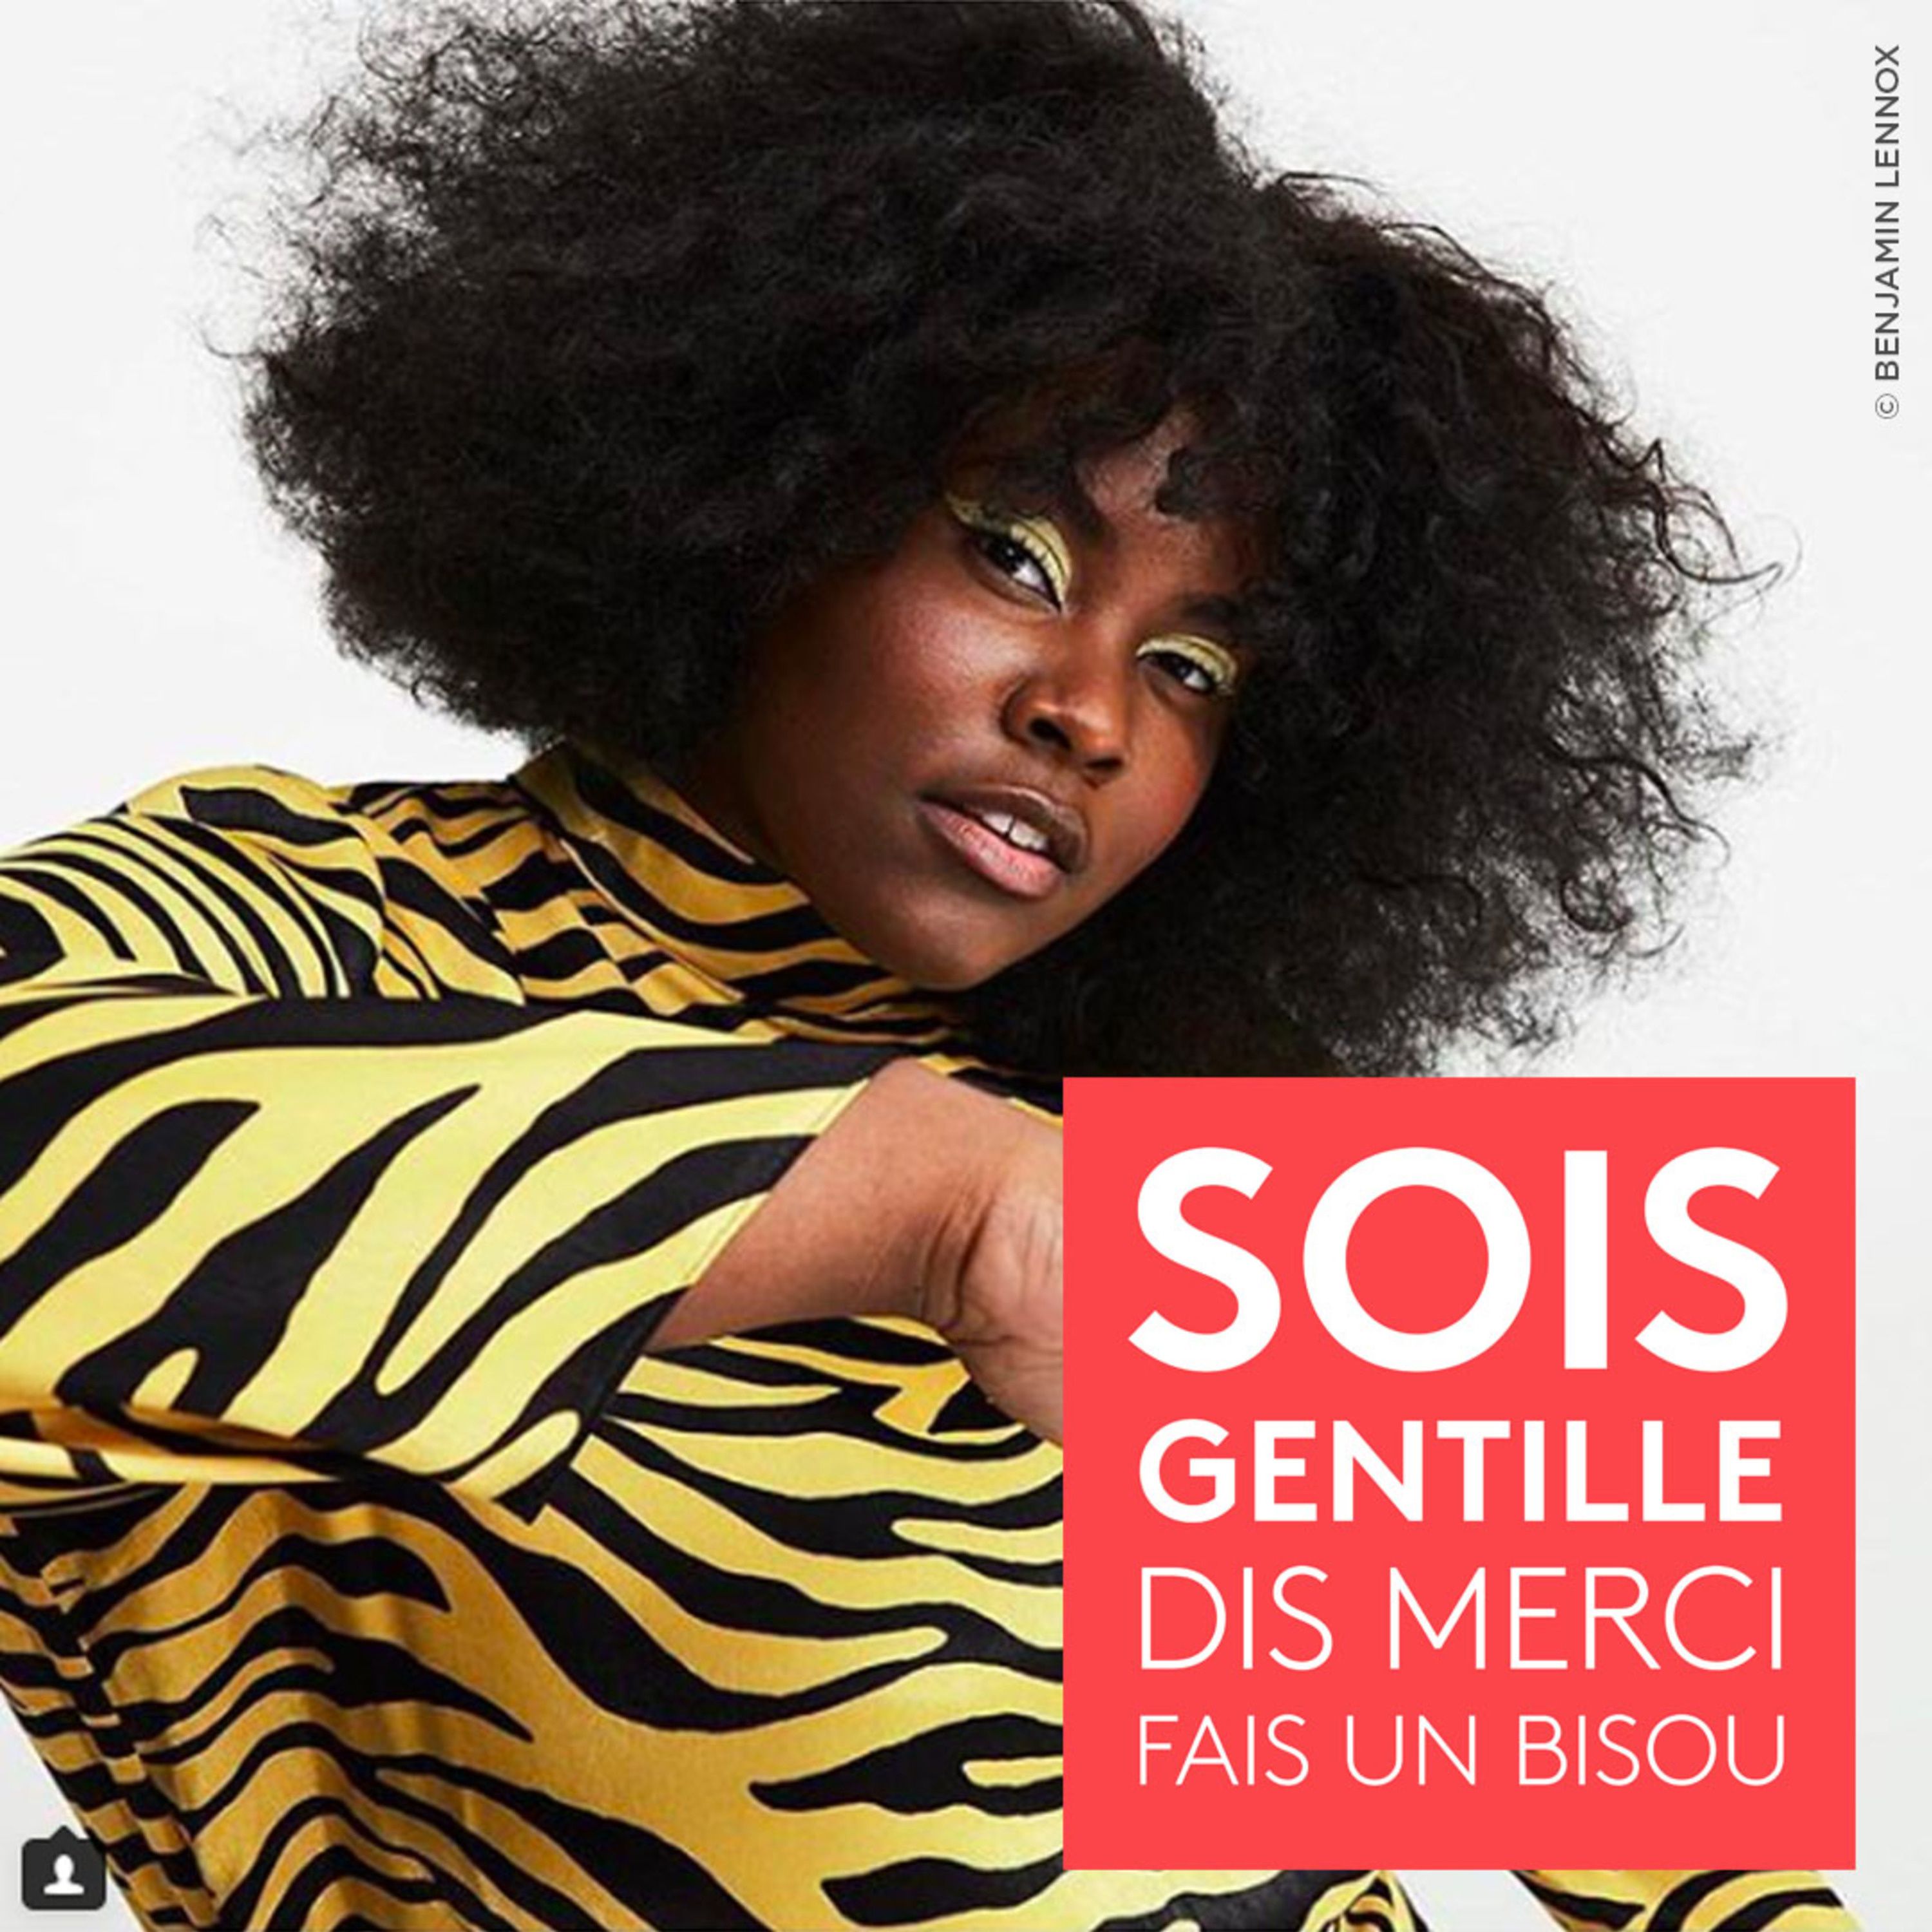 cover art for Sois Gentille, Dis Merci, Fais un Bisou — Yseult, la voix qui va faire parler d’elle en 2019